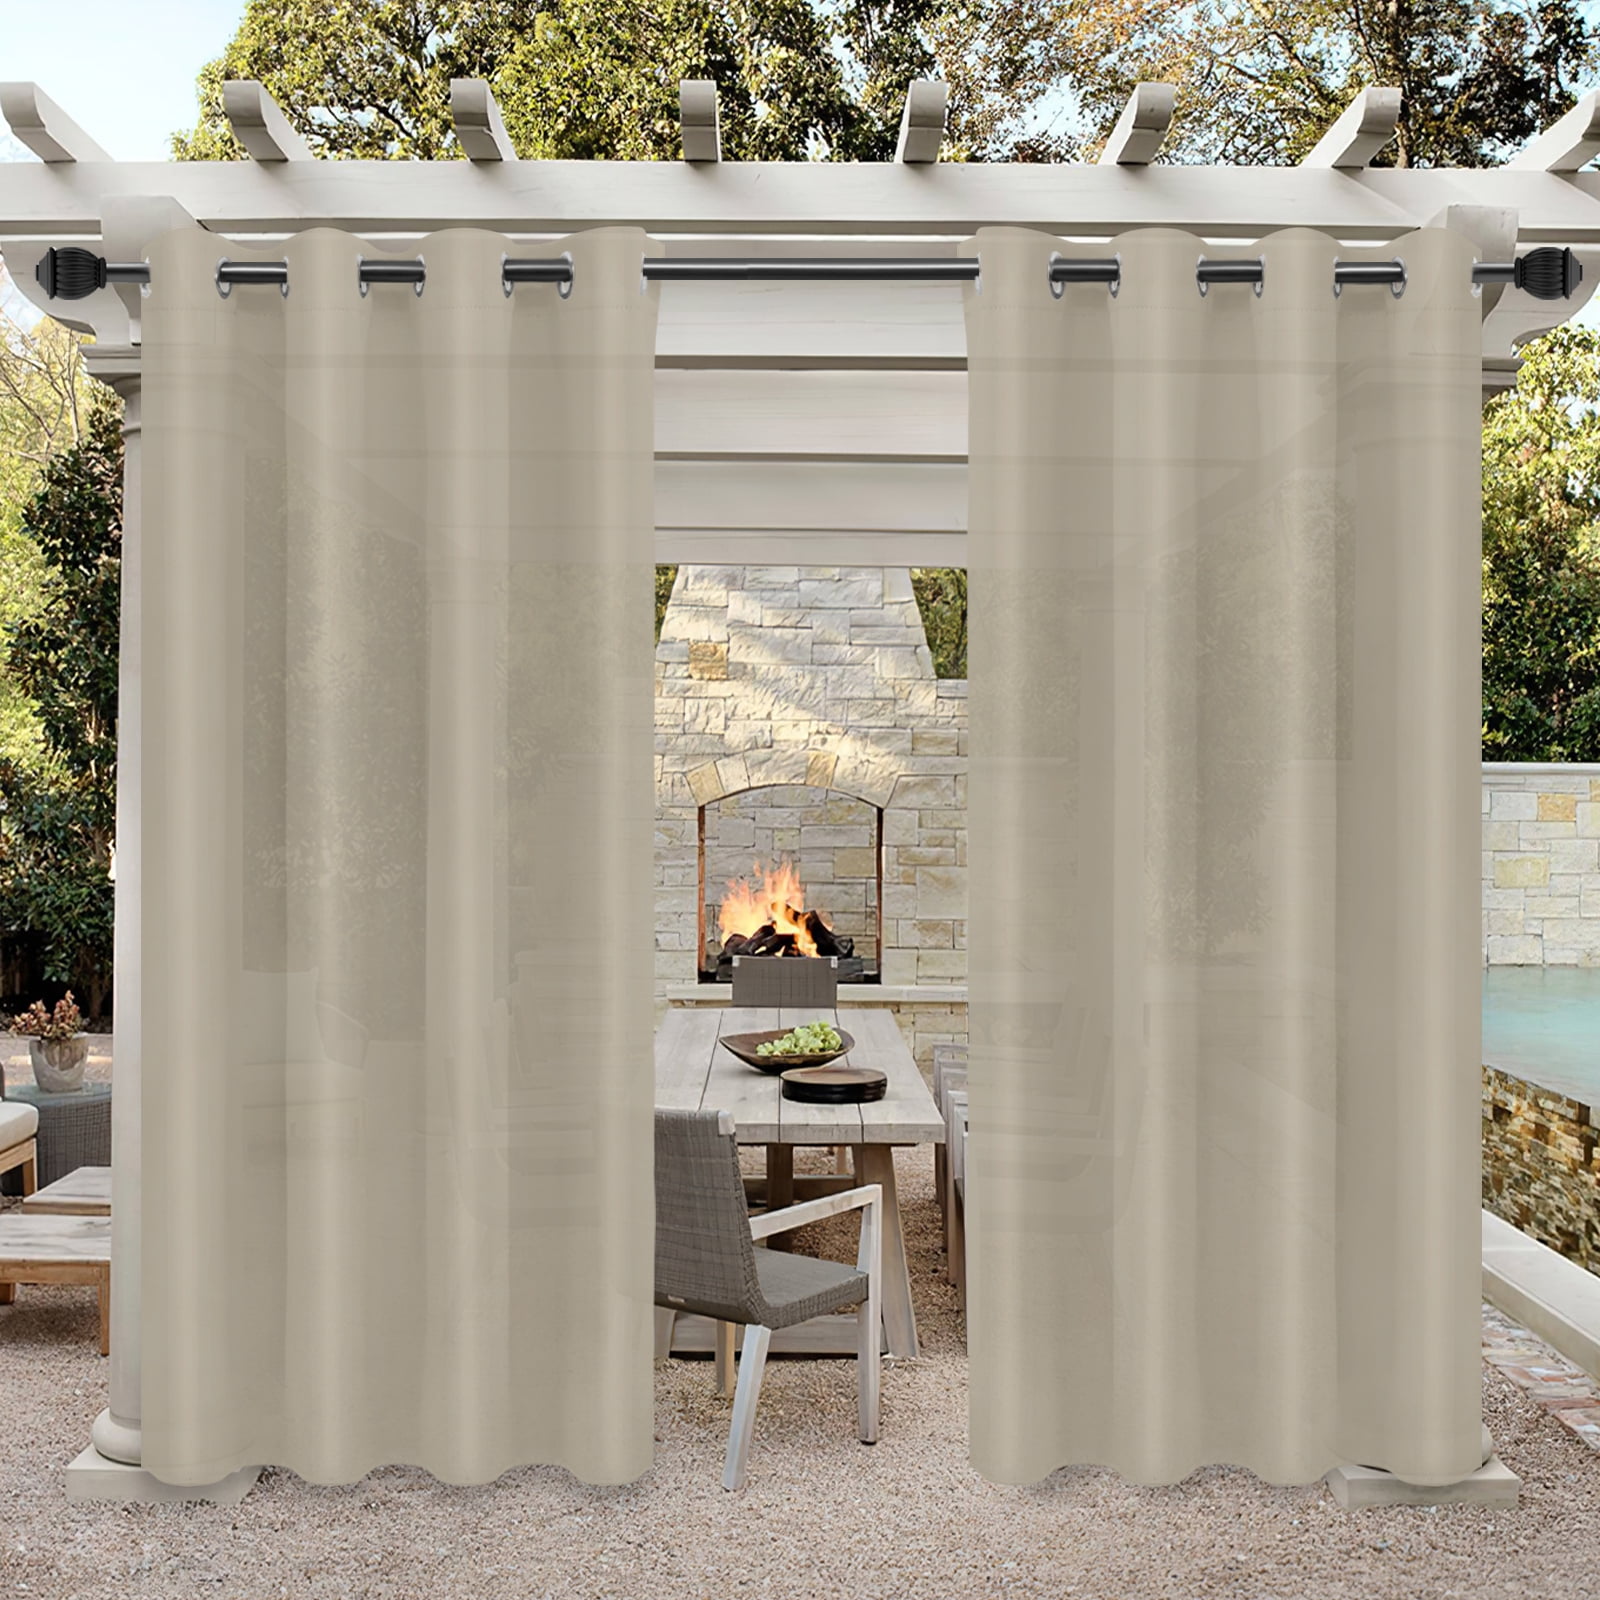 Stone 140 x 210cm Outdoor Curtain Eyelet Panel Garden Décor Drape Patio Shade 